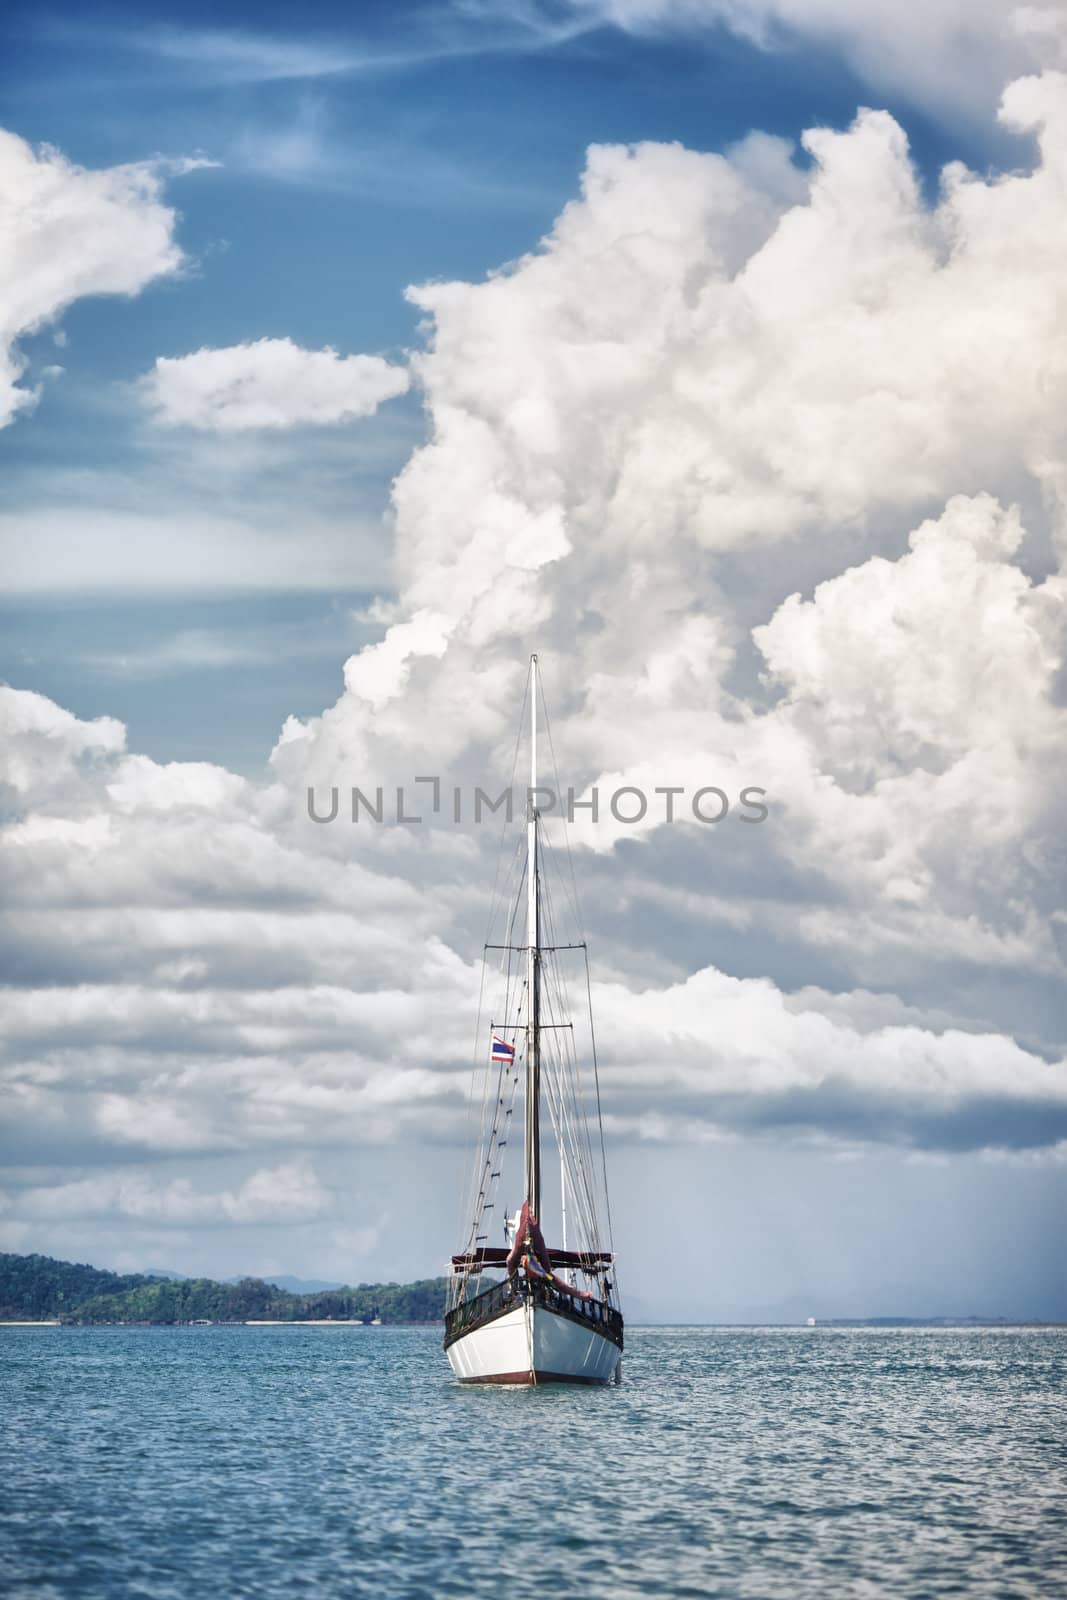 Yacht in a Sea by petr_malyshev